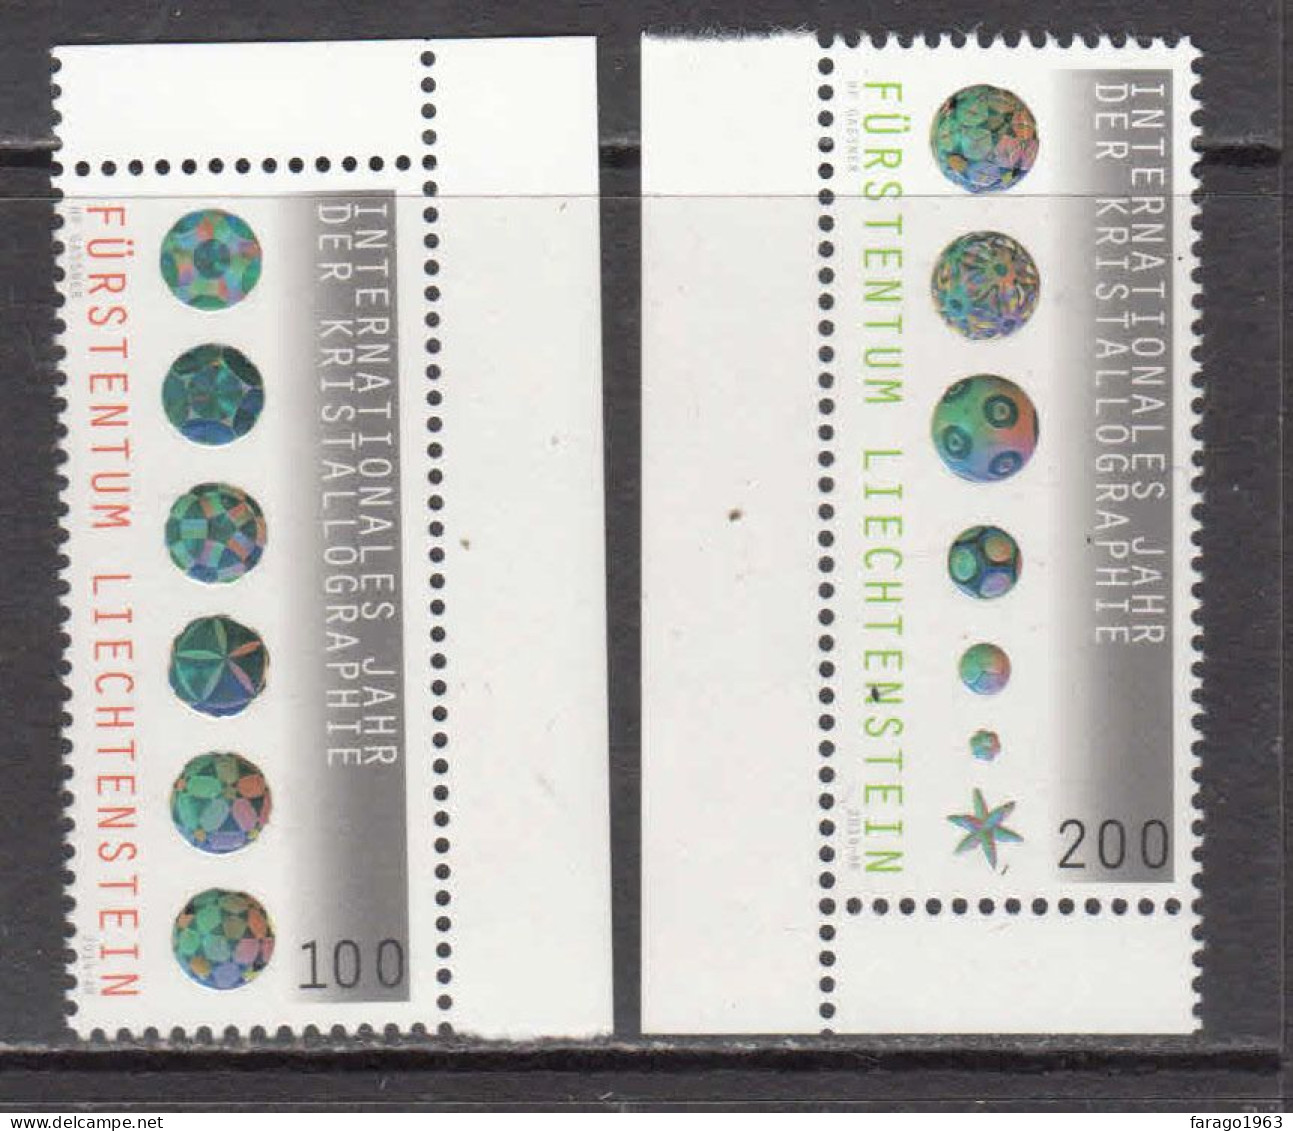 2014 Liechtenstein Year Of Crystallography Complete Set Of 2 MNH @ BELOW FACE VALUE - Ongebruikt